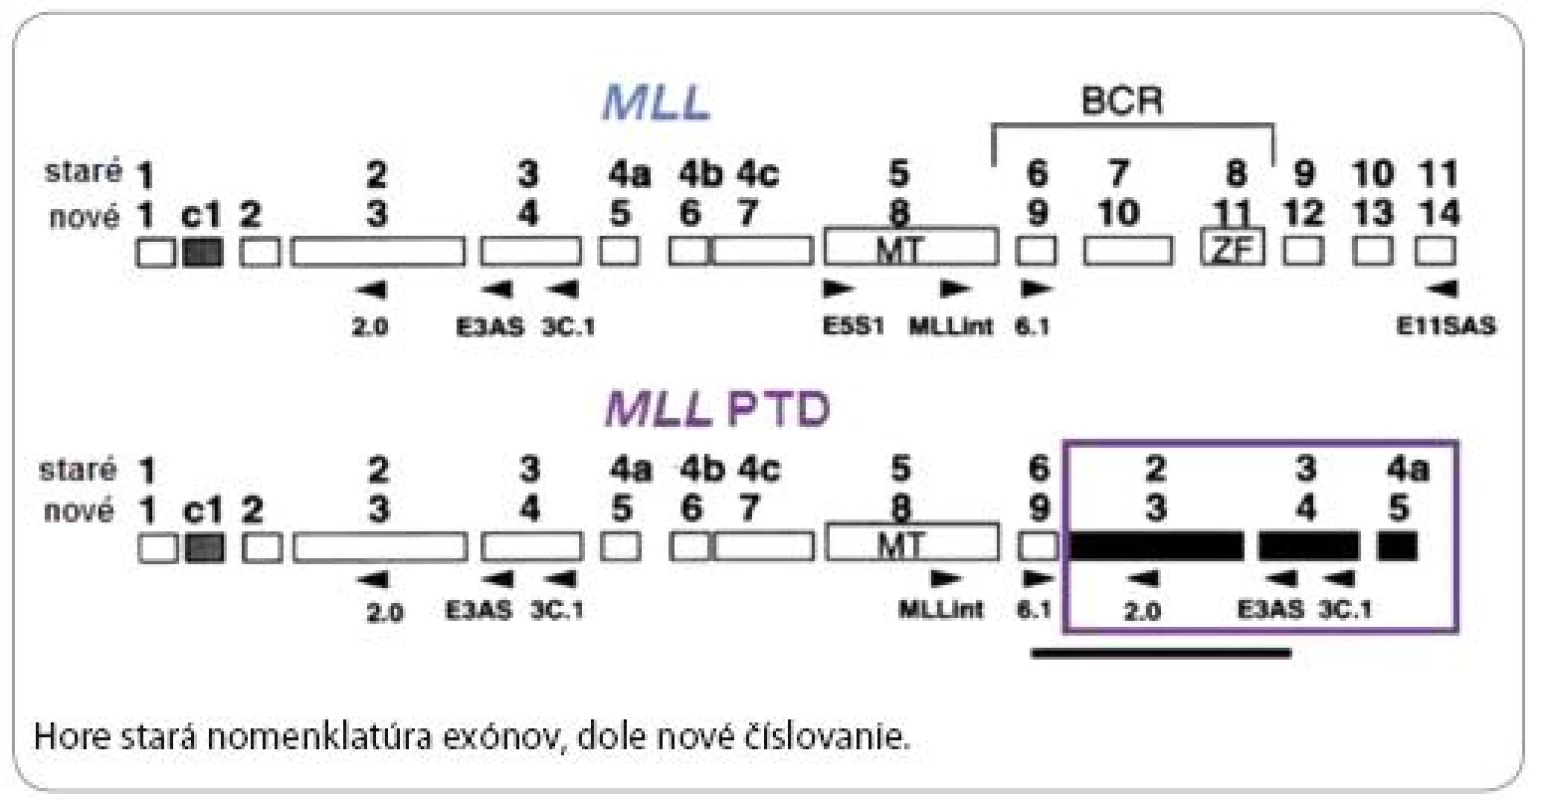 MLL protoonkogén a MLL PTD [18].